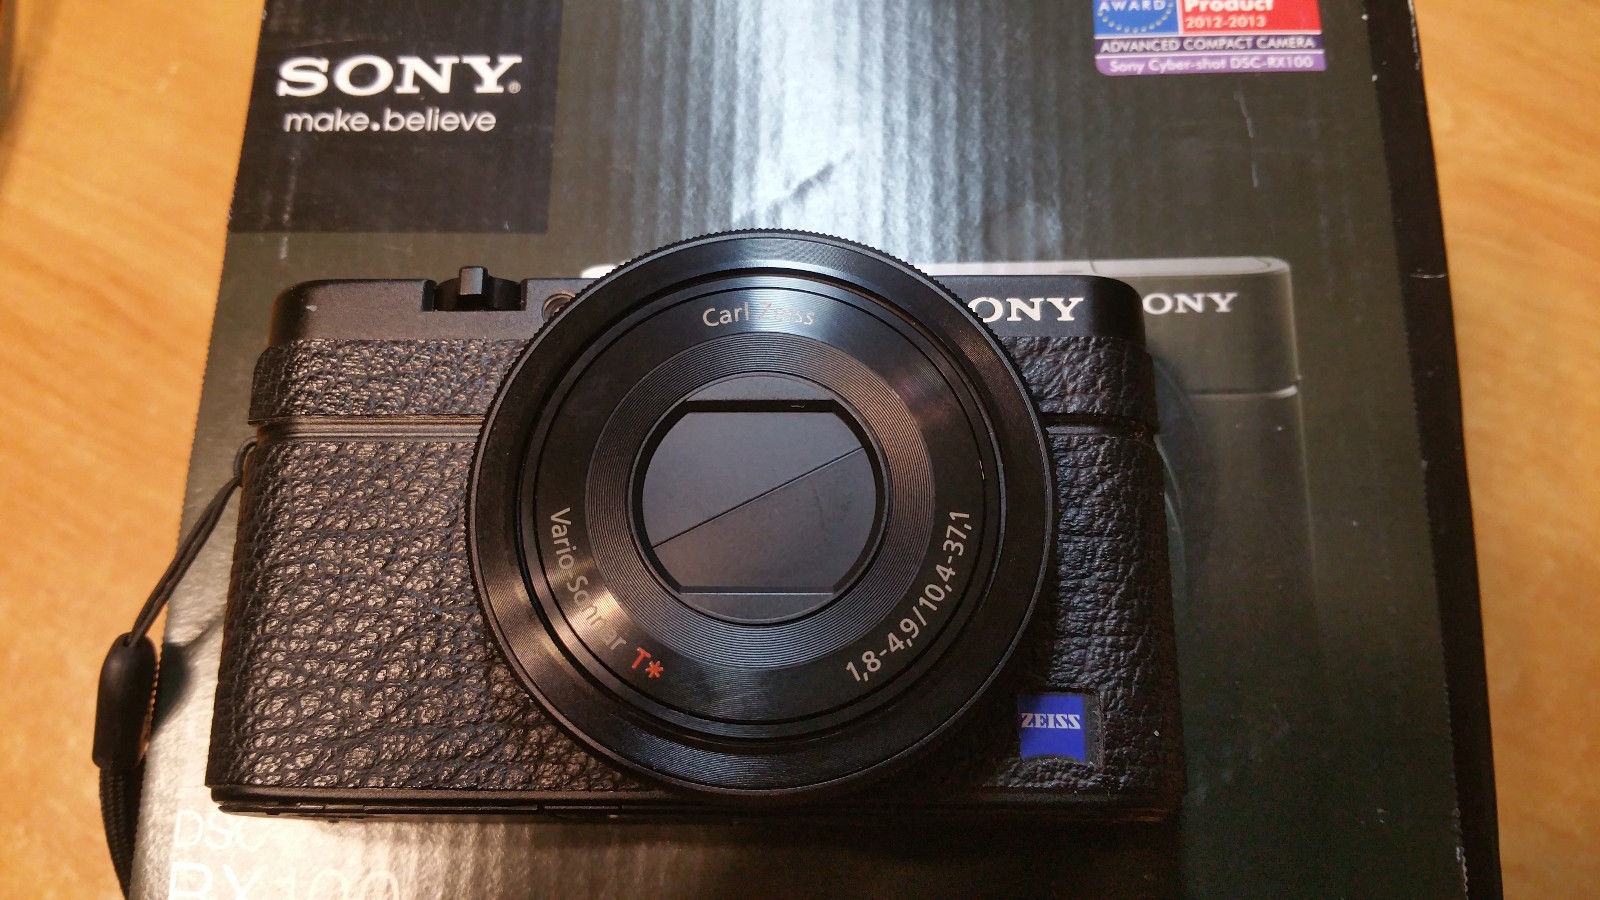 Sony Cyber-shot DSC-RX100 I 20.2 MP Digitalkamera - Schwarz